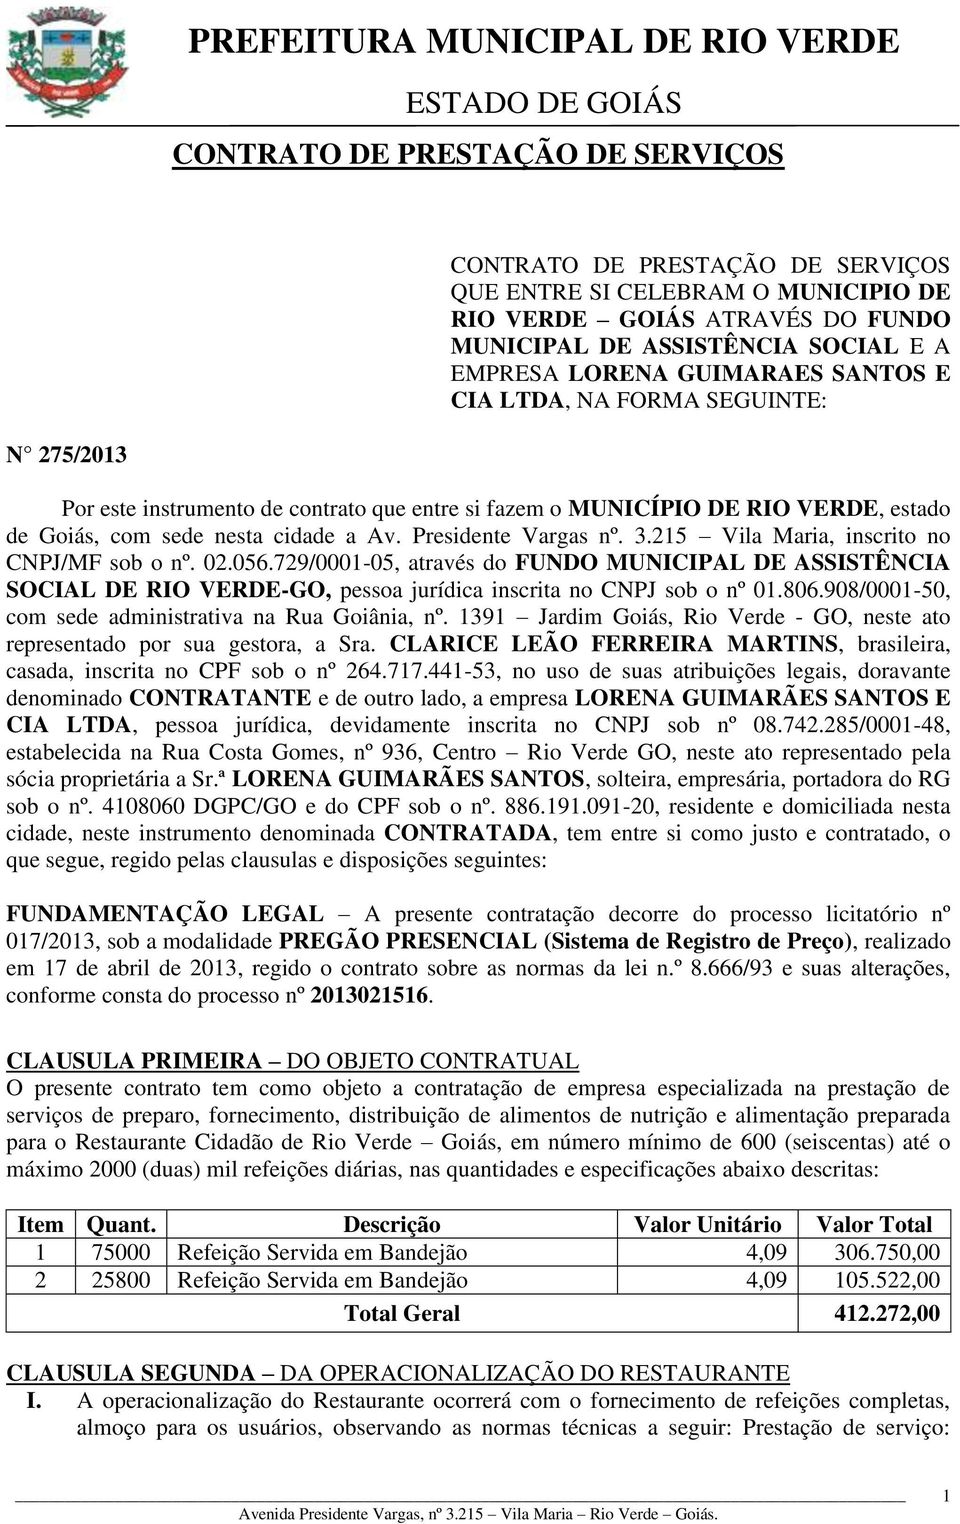 215 Vila Maria, inscrito no CNPJ/MF sob o nº. 02.056.729/0001-05, através do FUNDO MUNICIPAL DE ASSISTÊNCIA SOCIAL DE RIO VERDE-GO, pessoa jurídica inscrita no CNPJ sob o nº 01.806.